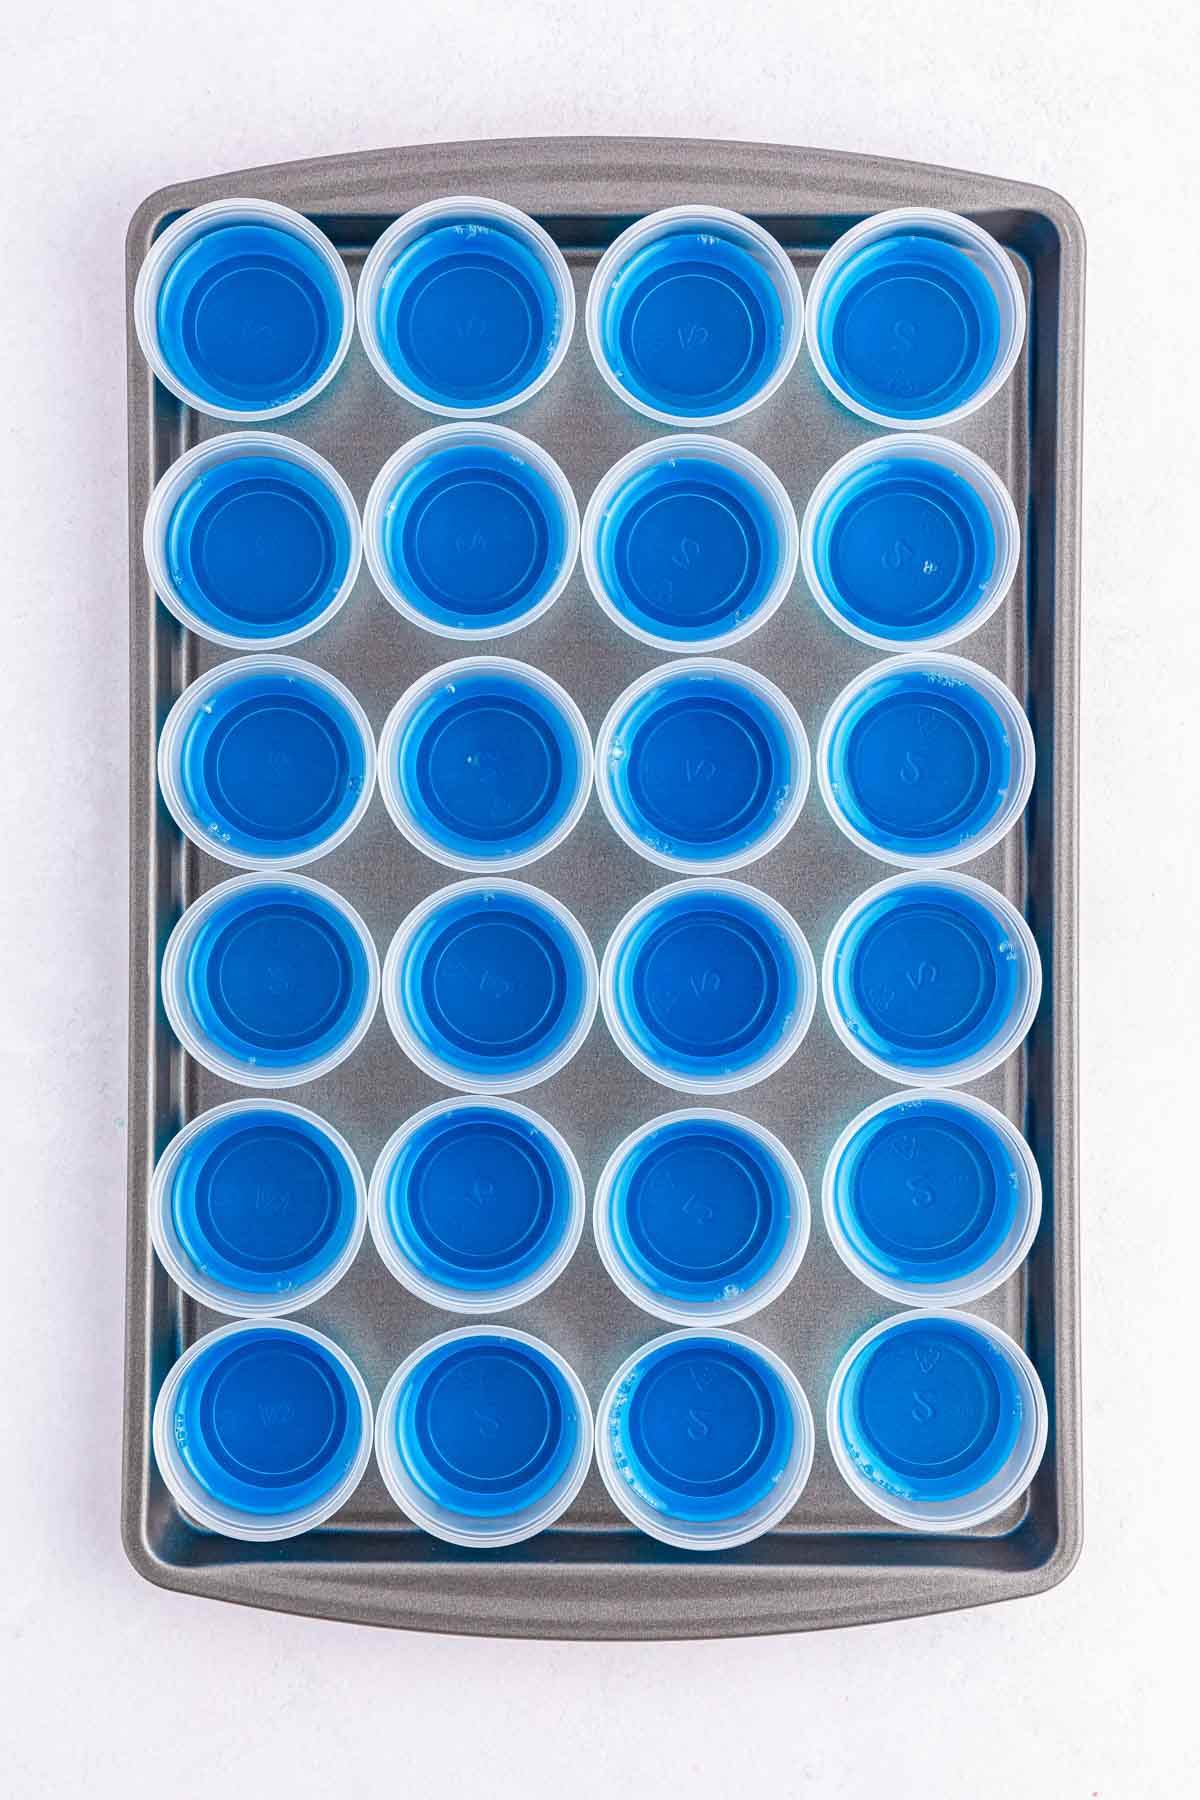 blue jello in little plastic cups